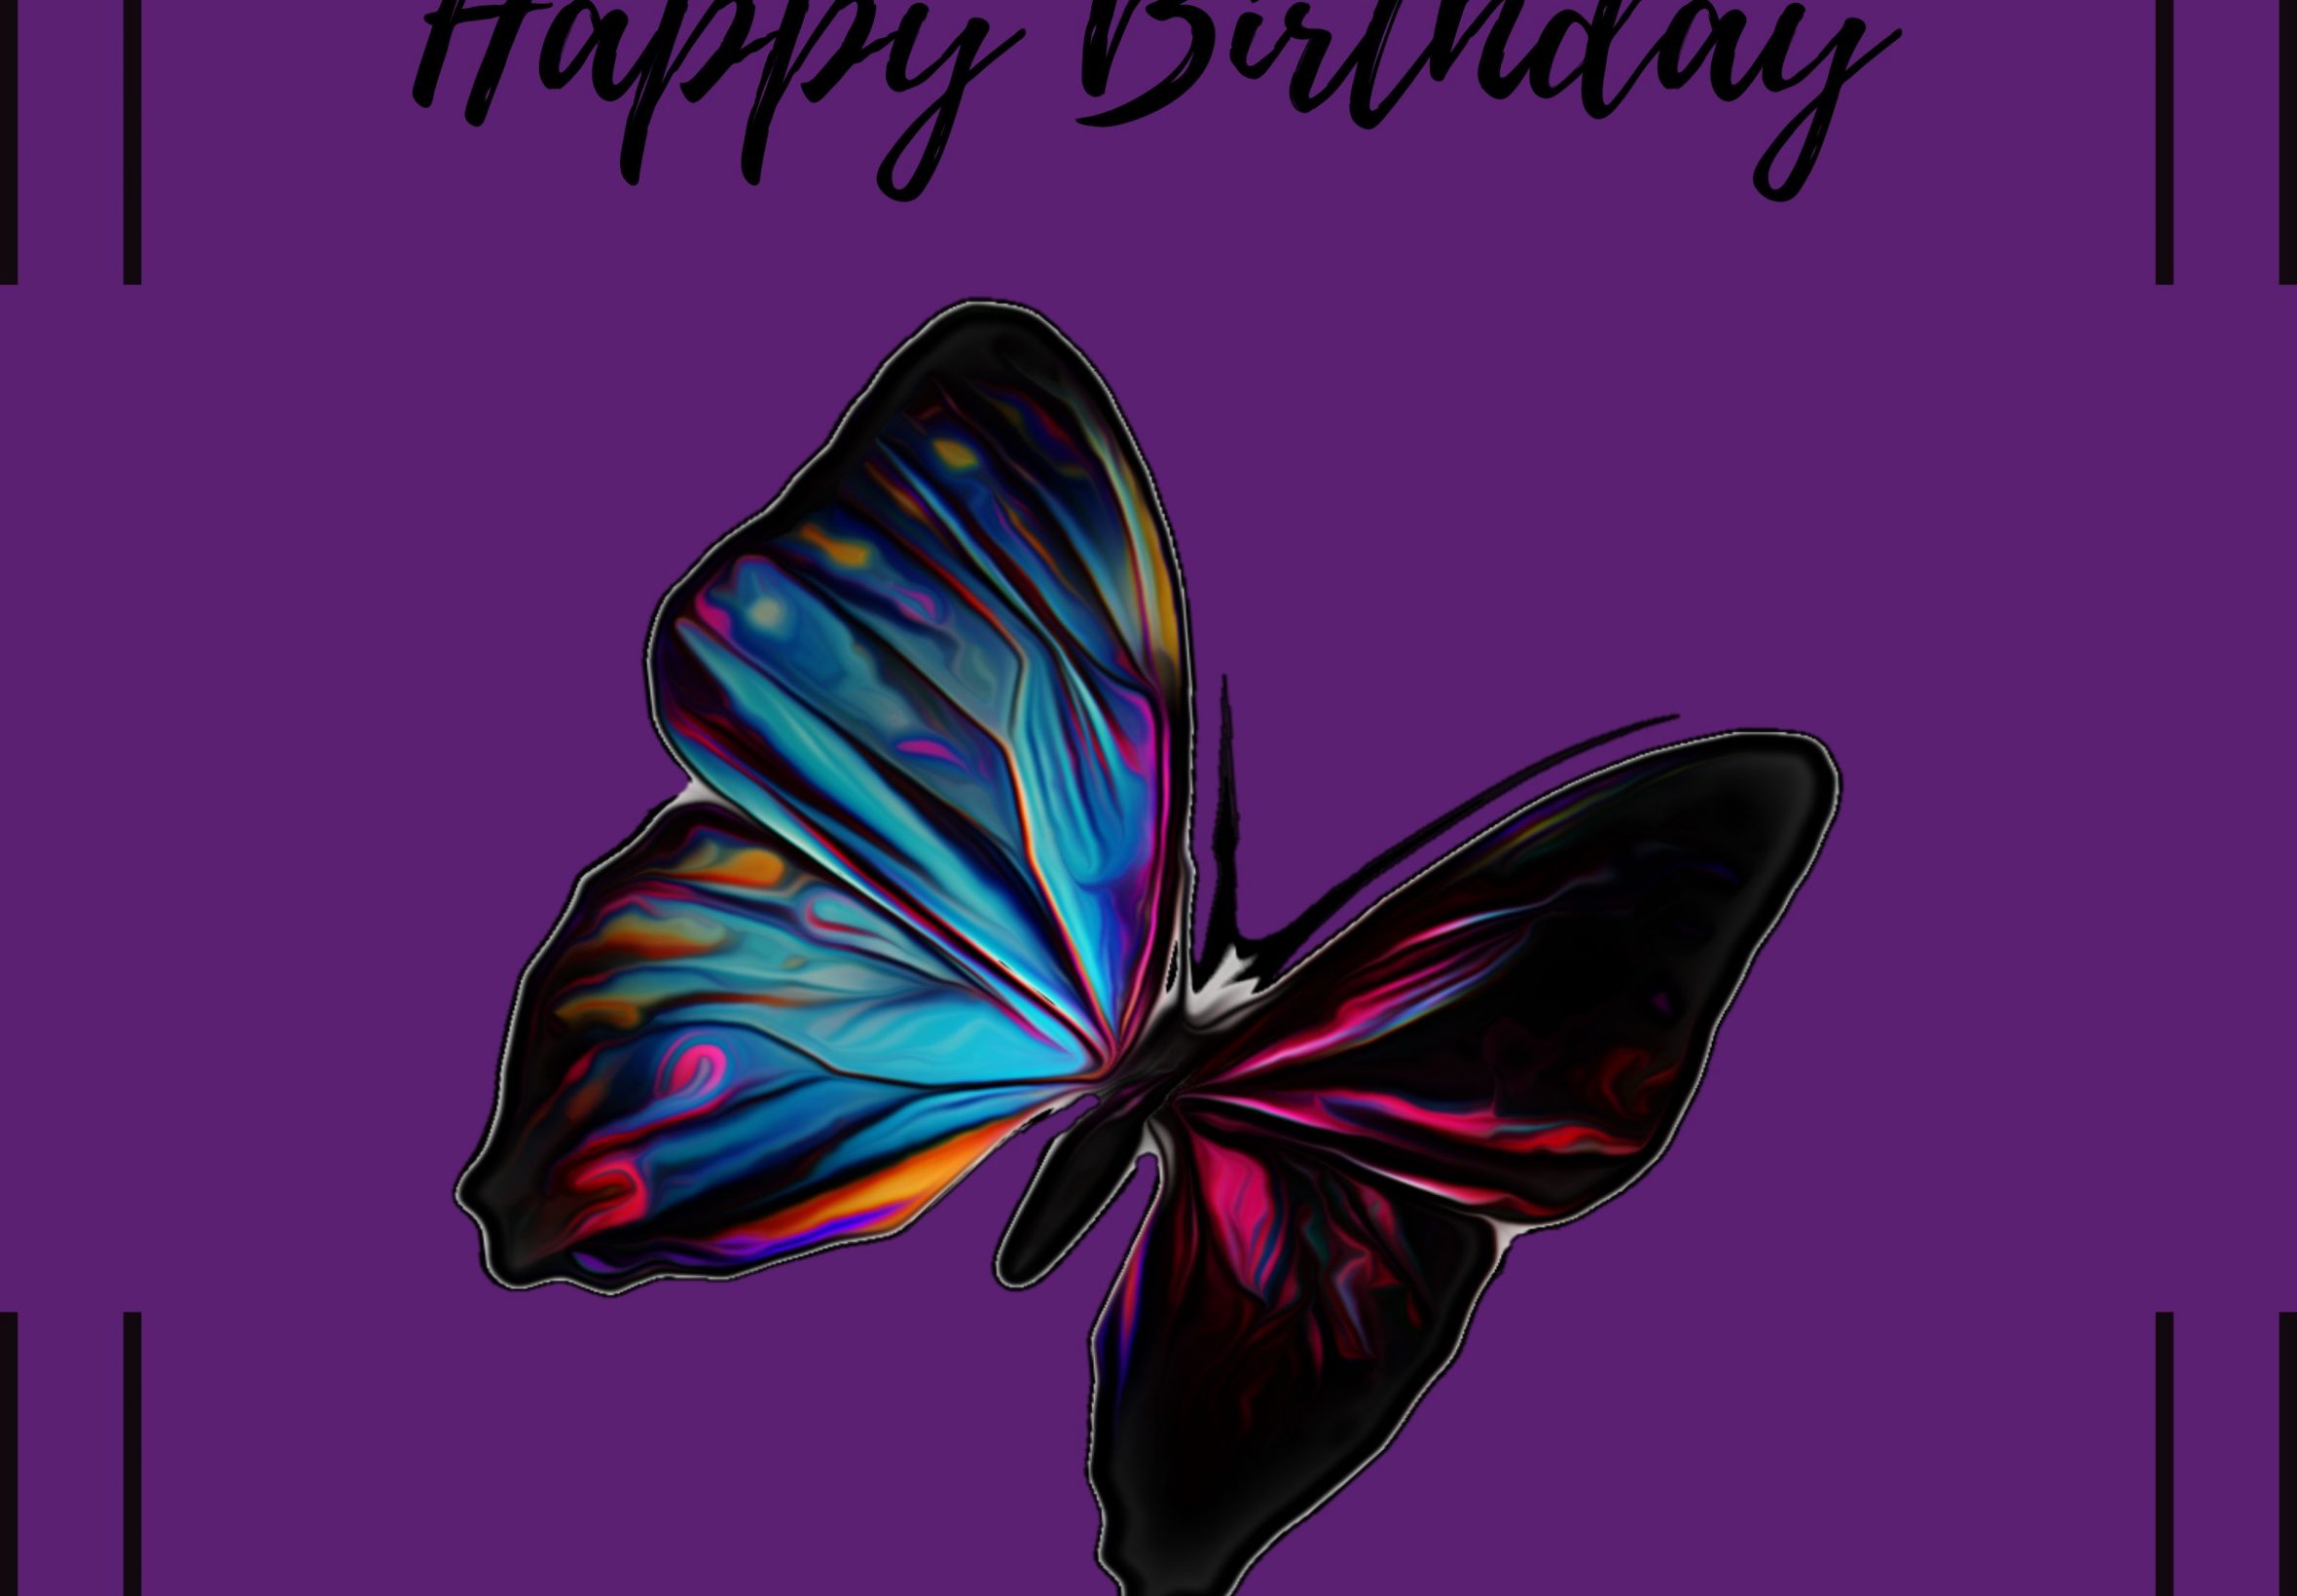 2360x1640 iPad Air wallpaper 4k Happy Birthday Rainbow Butterfly Ipad Wallpaper 2360x1640 pixels resolution